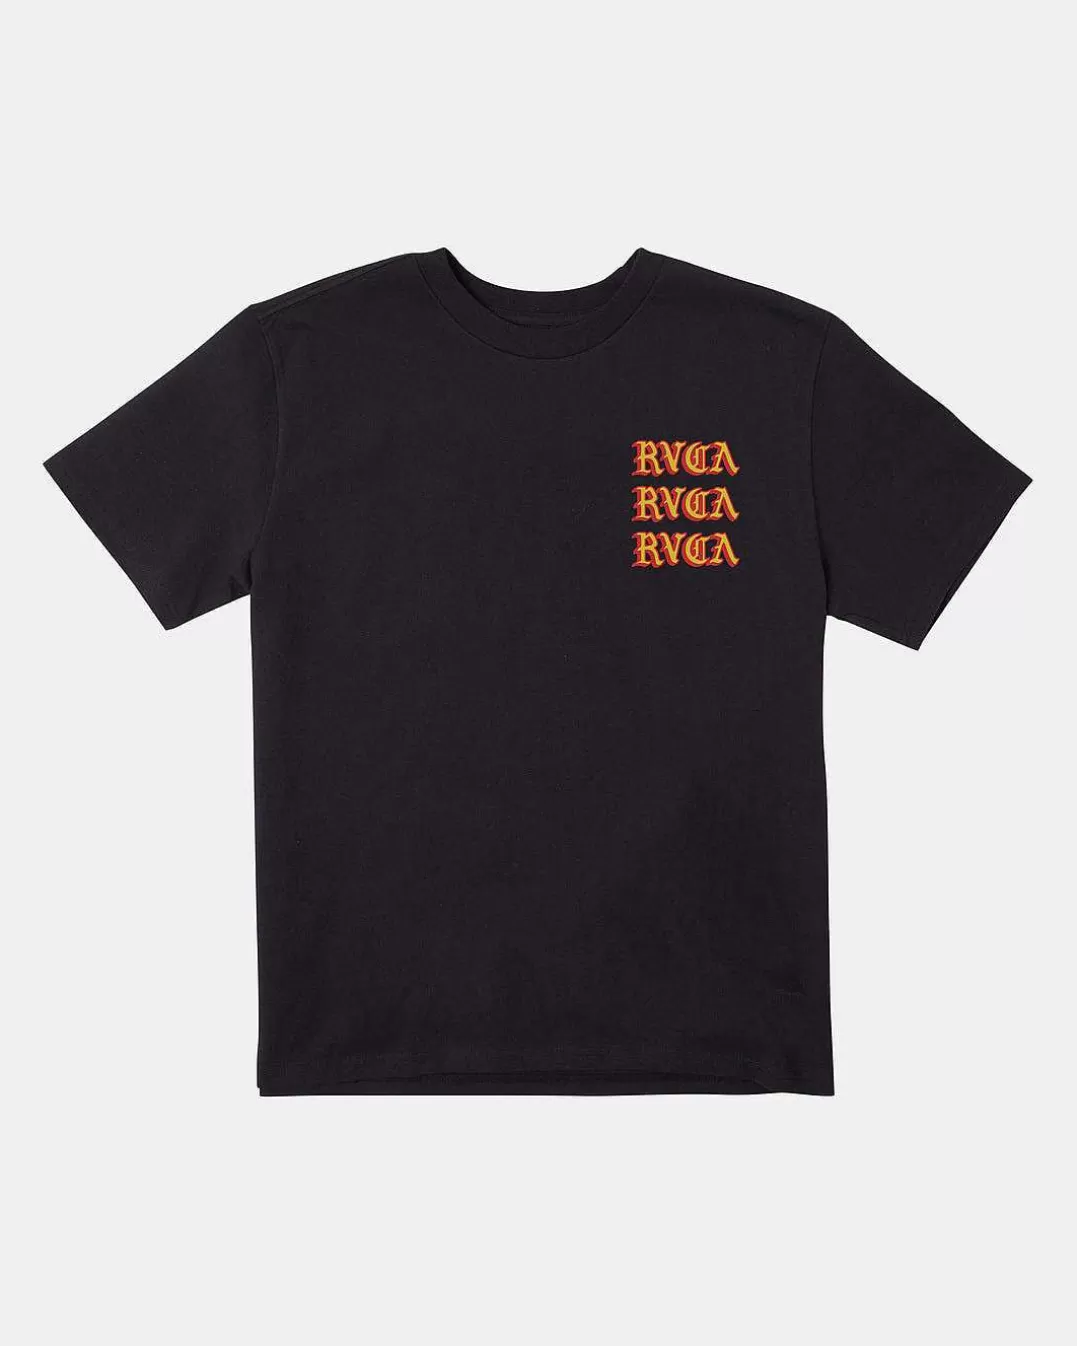 Camiseta Del Toro>RVCA Shop